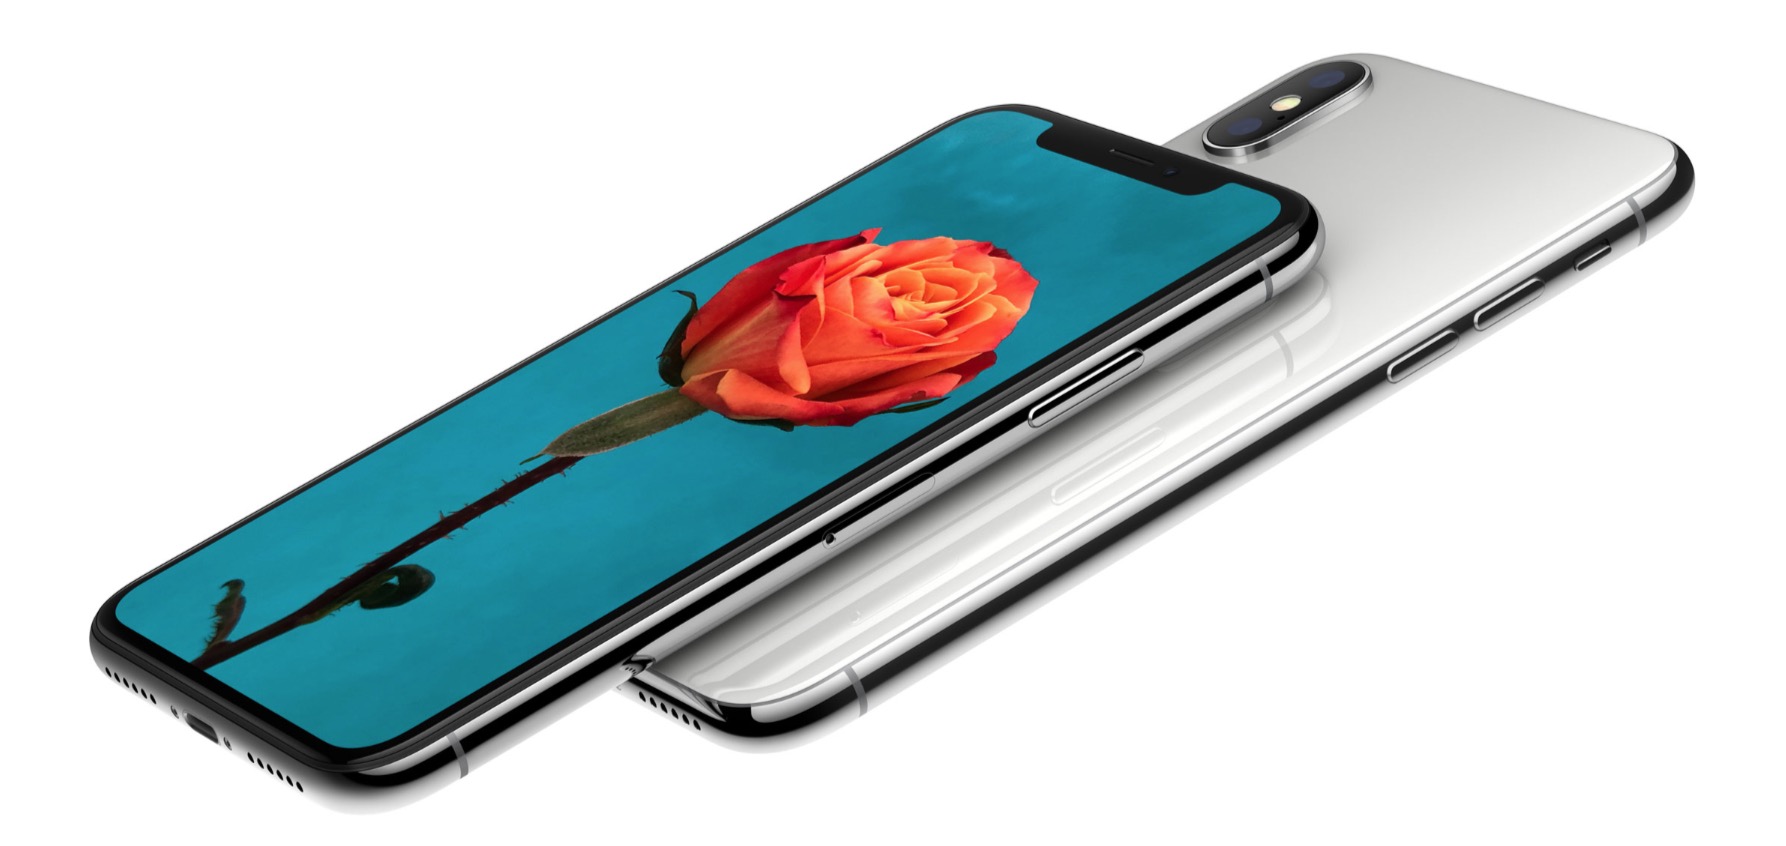 Apple iPhone X: thiết kế mới, màn hình OLED 5"8, nhận dạng khuôn mặt 3D, không còn Touch ID